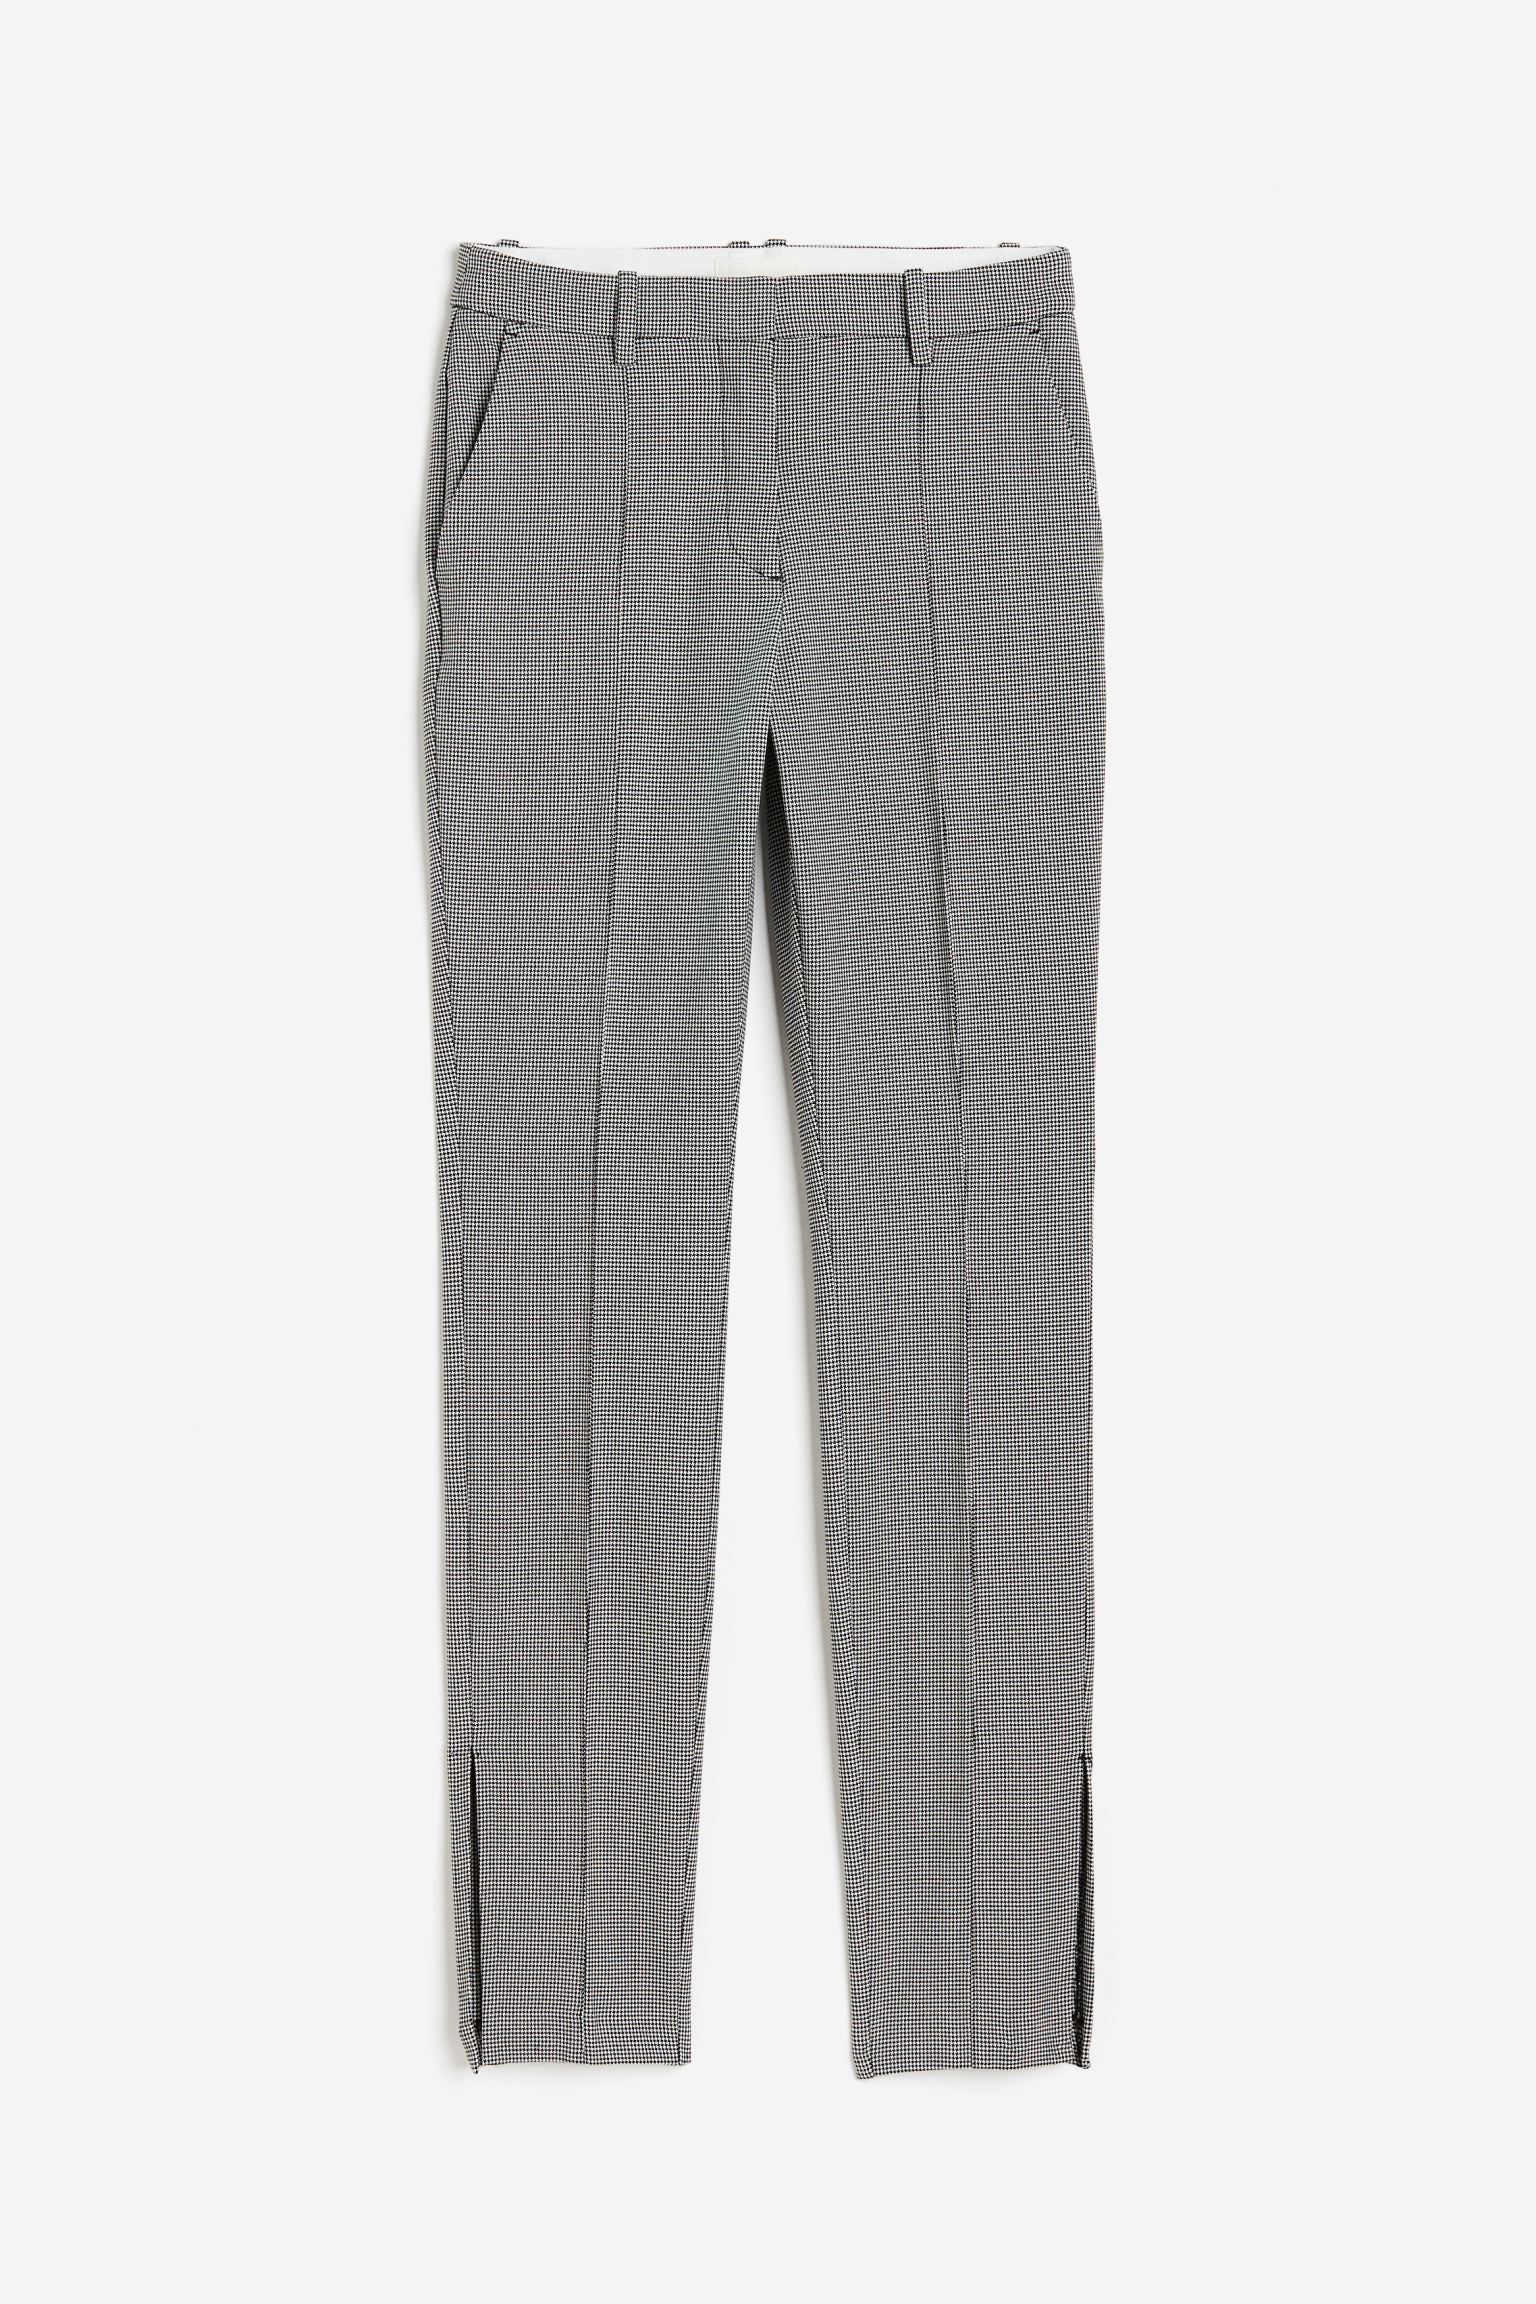 Брюки H&M Slit-hem, черный/гусиные лапки узкие брюки со складками спереди fransa curve stretch коричневый